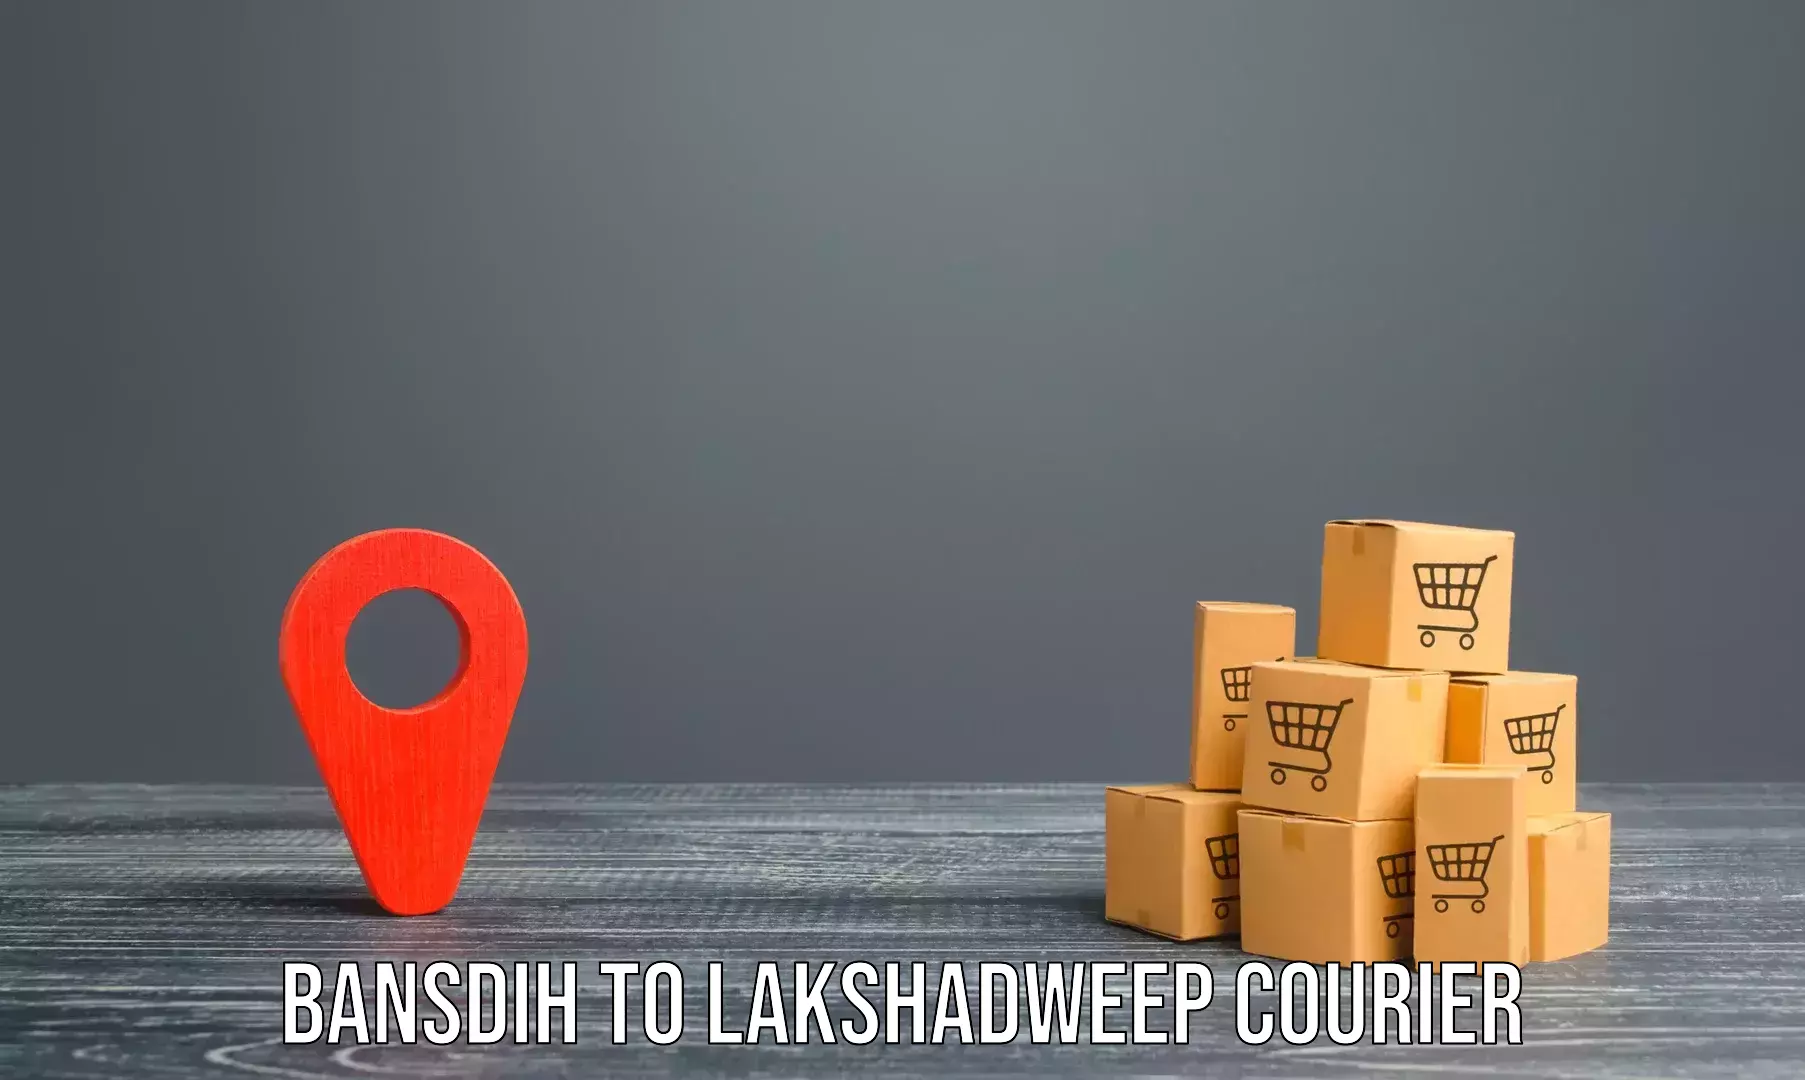 Home moving experts Bansdih to Lakshadweep